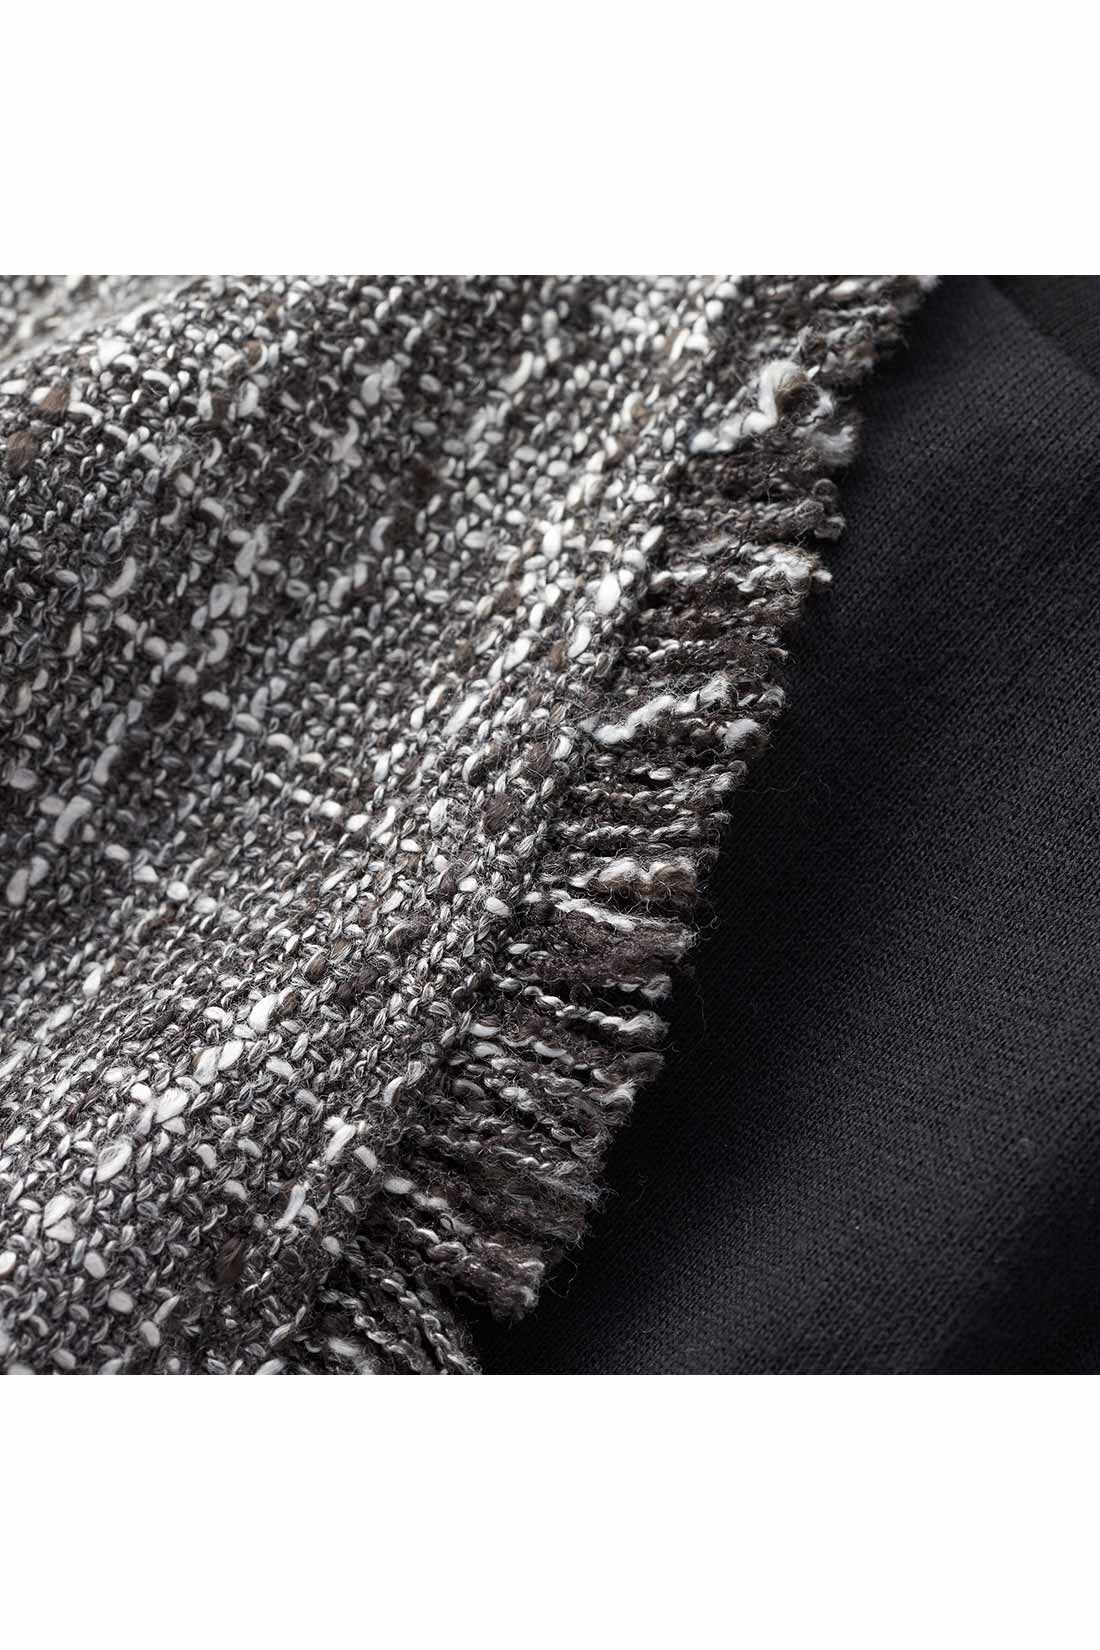 Real Stock|IEDIT[イディット]　こなれコーデがかなう　ツイードベストと長袖ロゴＴシャツのセット〈ブラック〉|数種の糸で表情豊かに織り上げたツイード素材。ネックやアームホールまわりのフリンジがこなれた印象に。